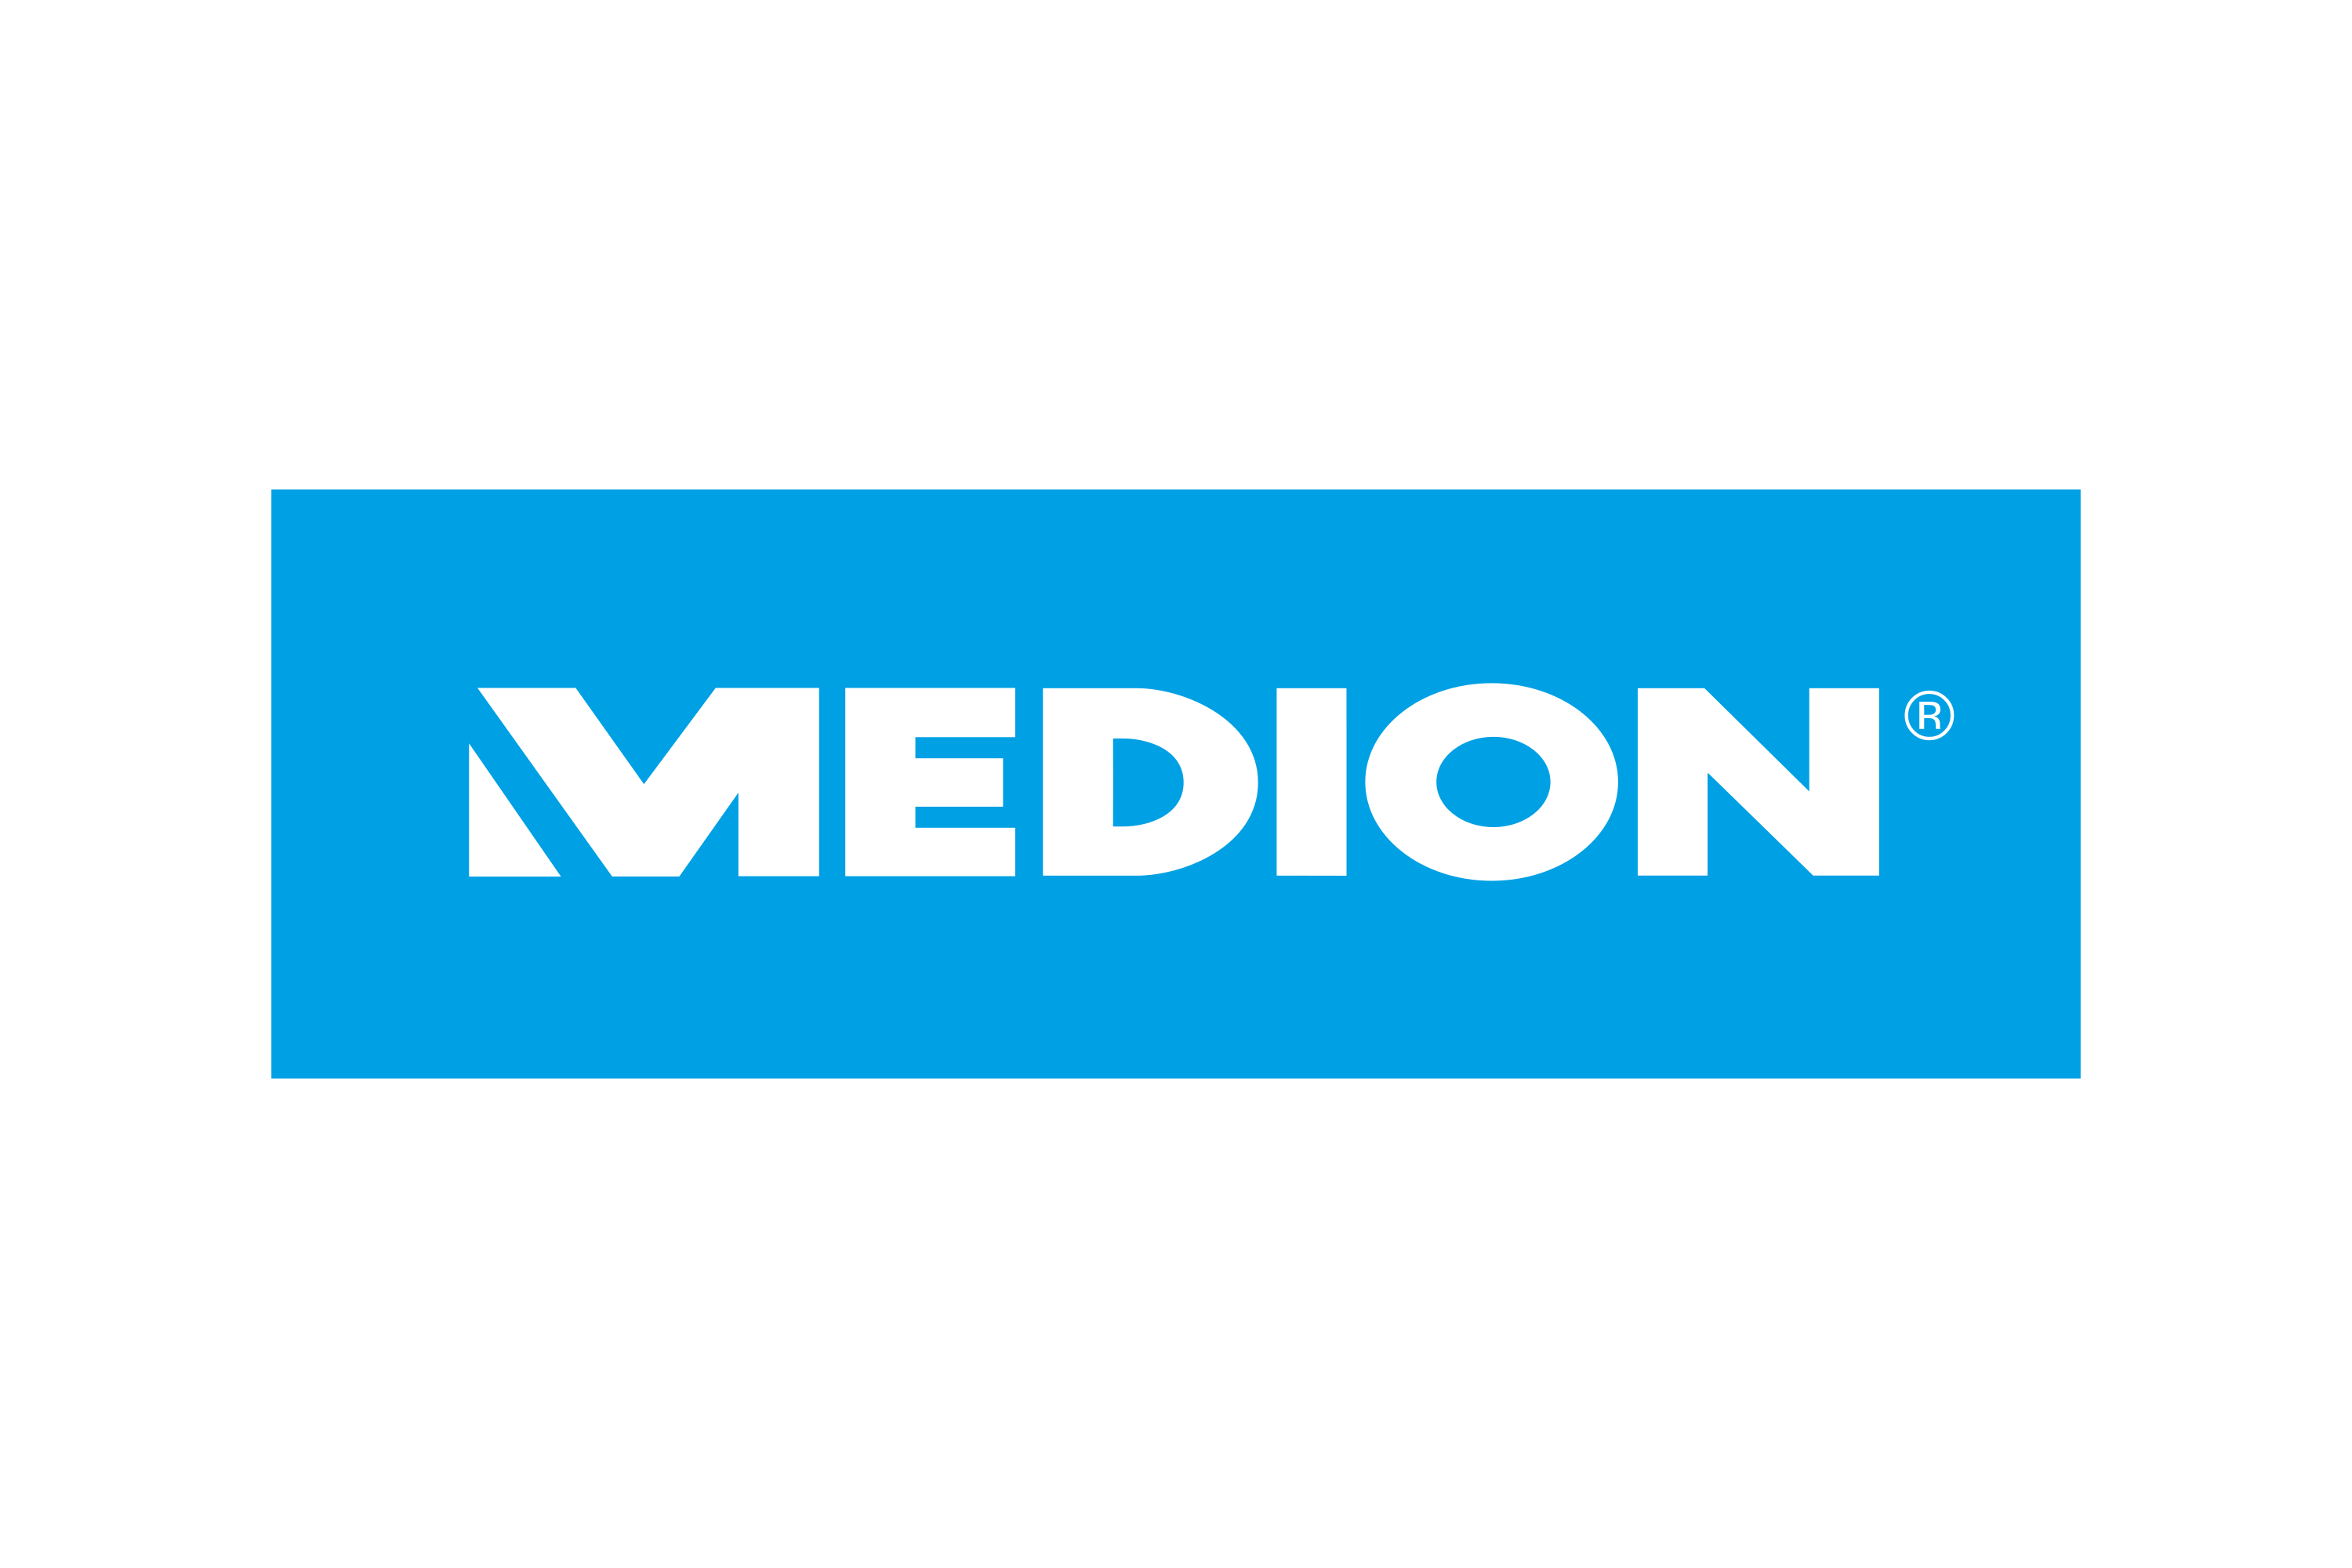 Medion Logo PNG Transparent & SVG Vector - Freebie Supply